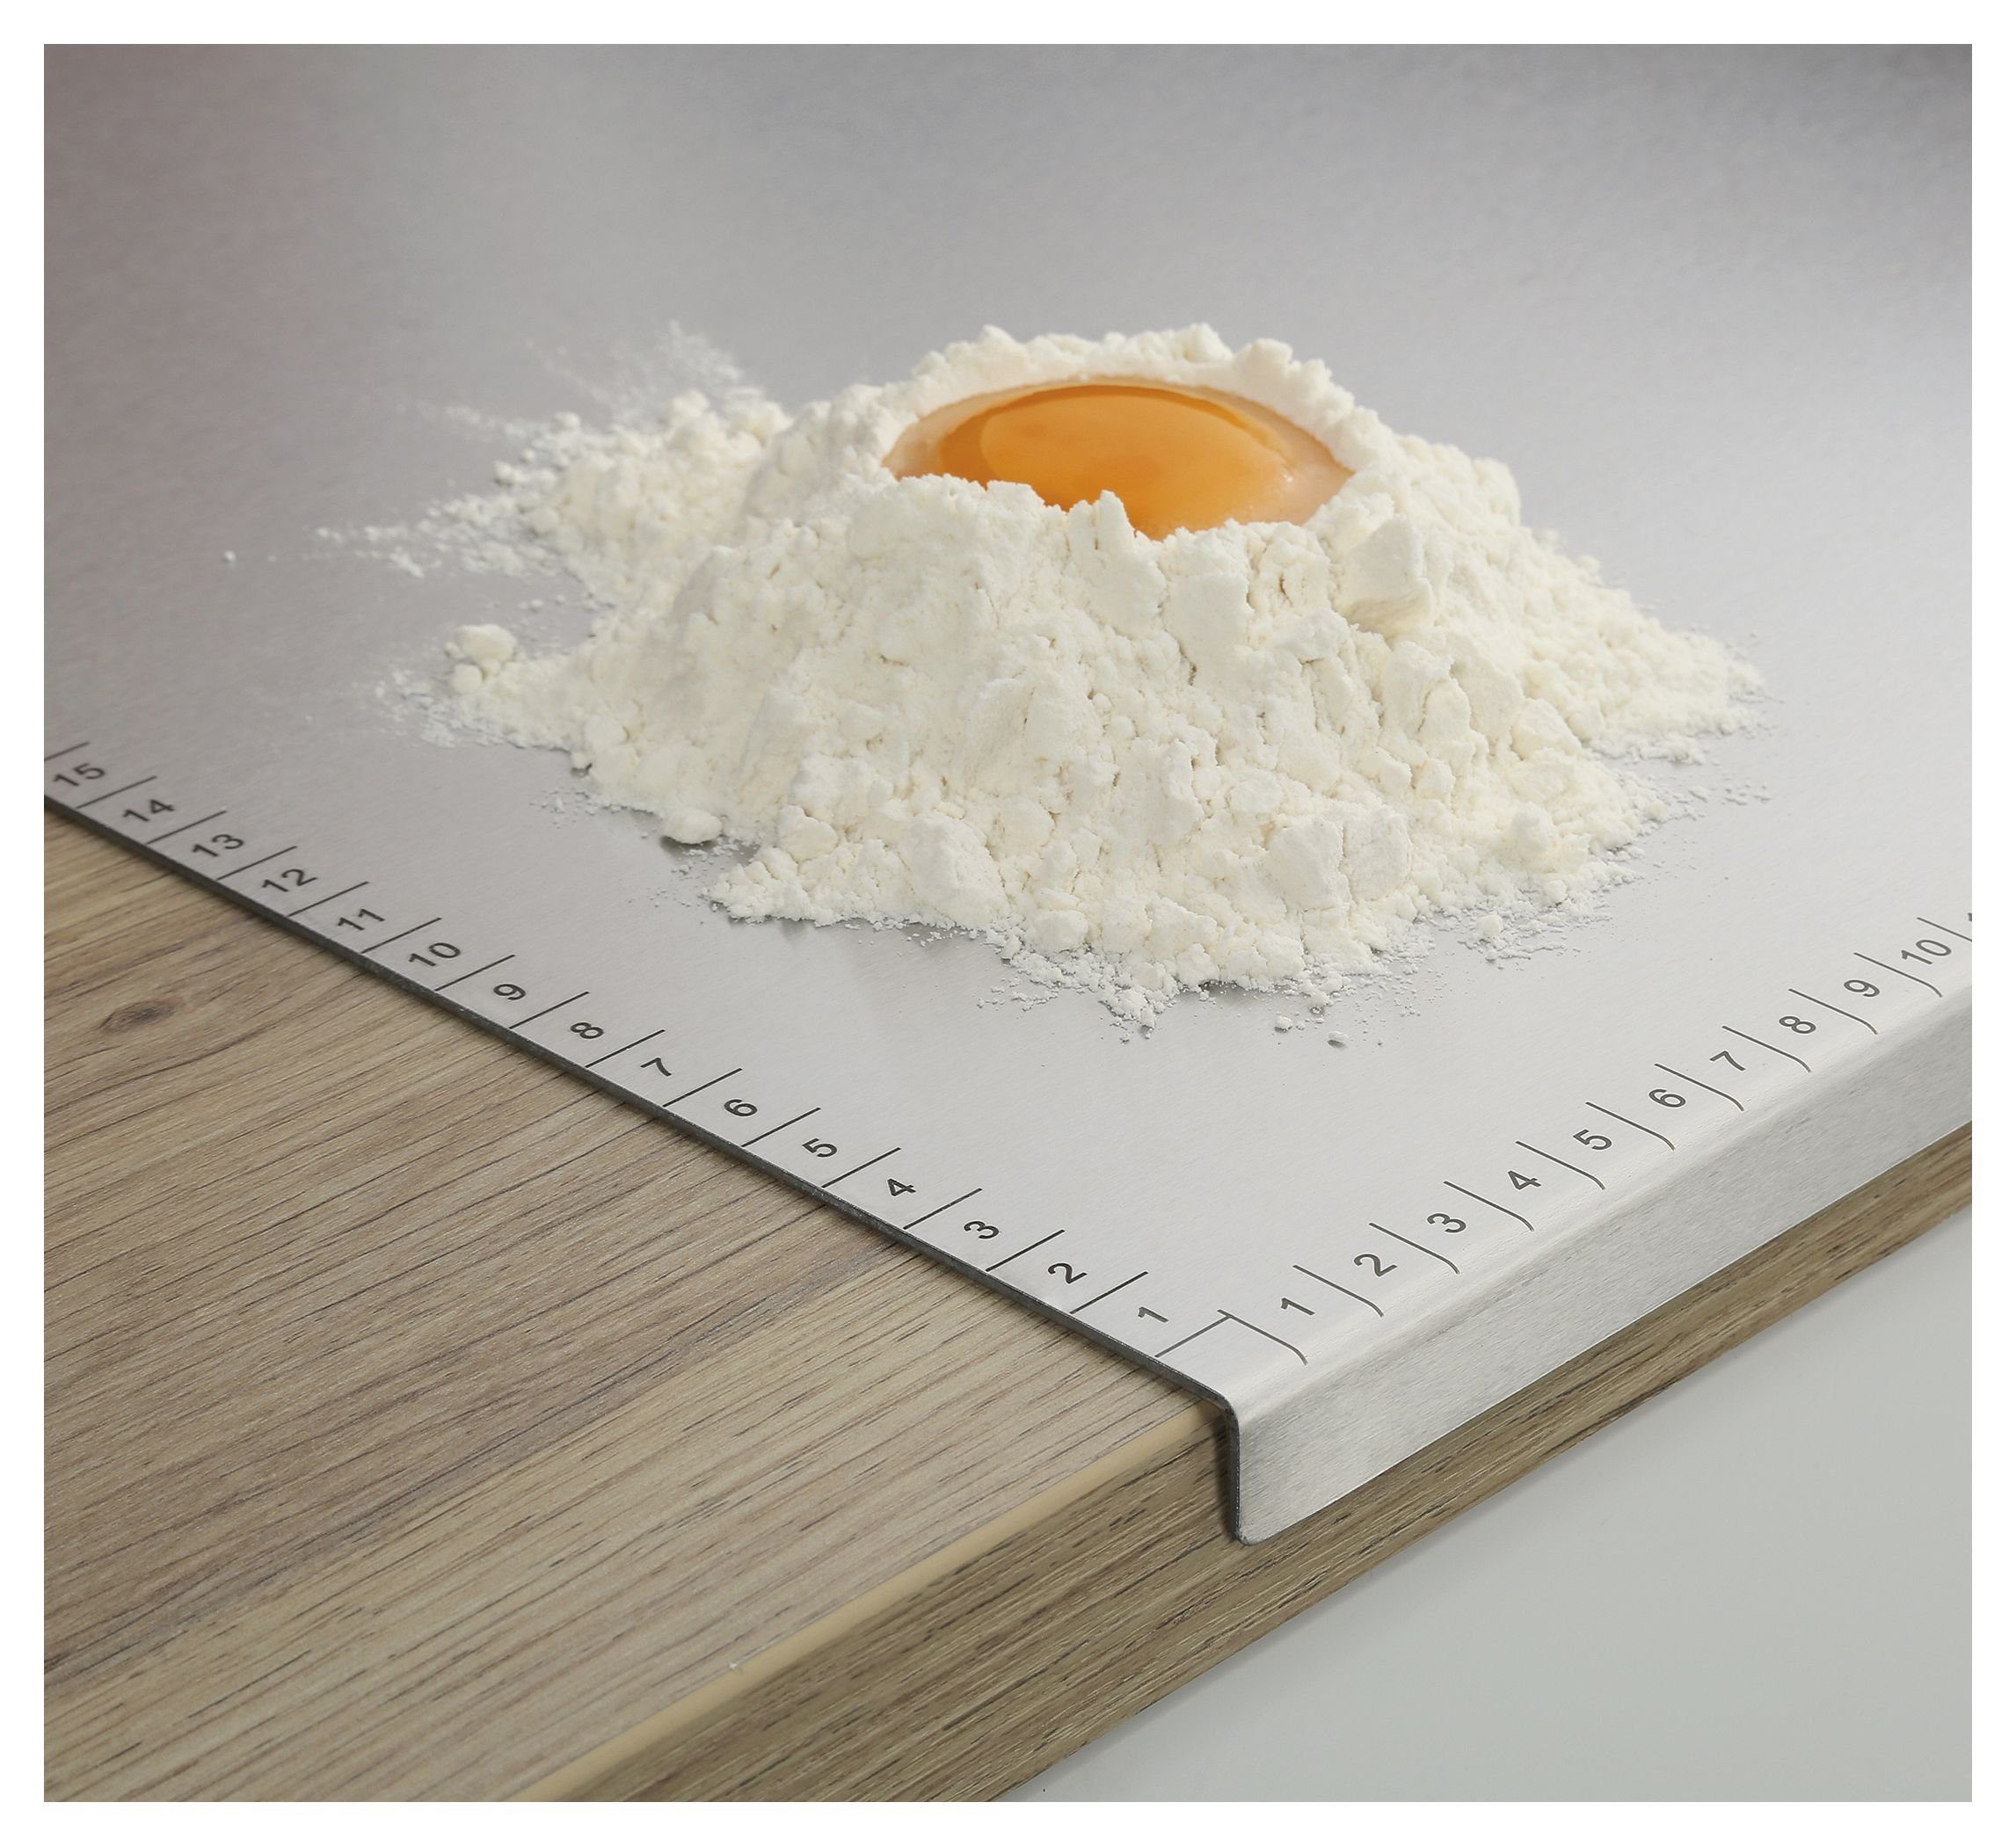 Küchenbrett Edelstahl 60x50cm Backbrett Küchenarbeitsplatte ZASSENHAUS Backbrett